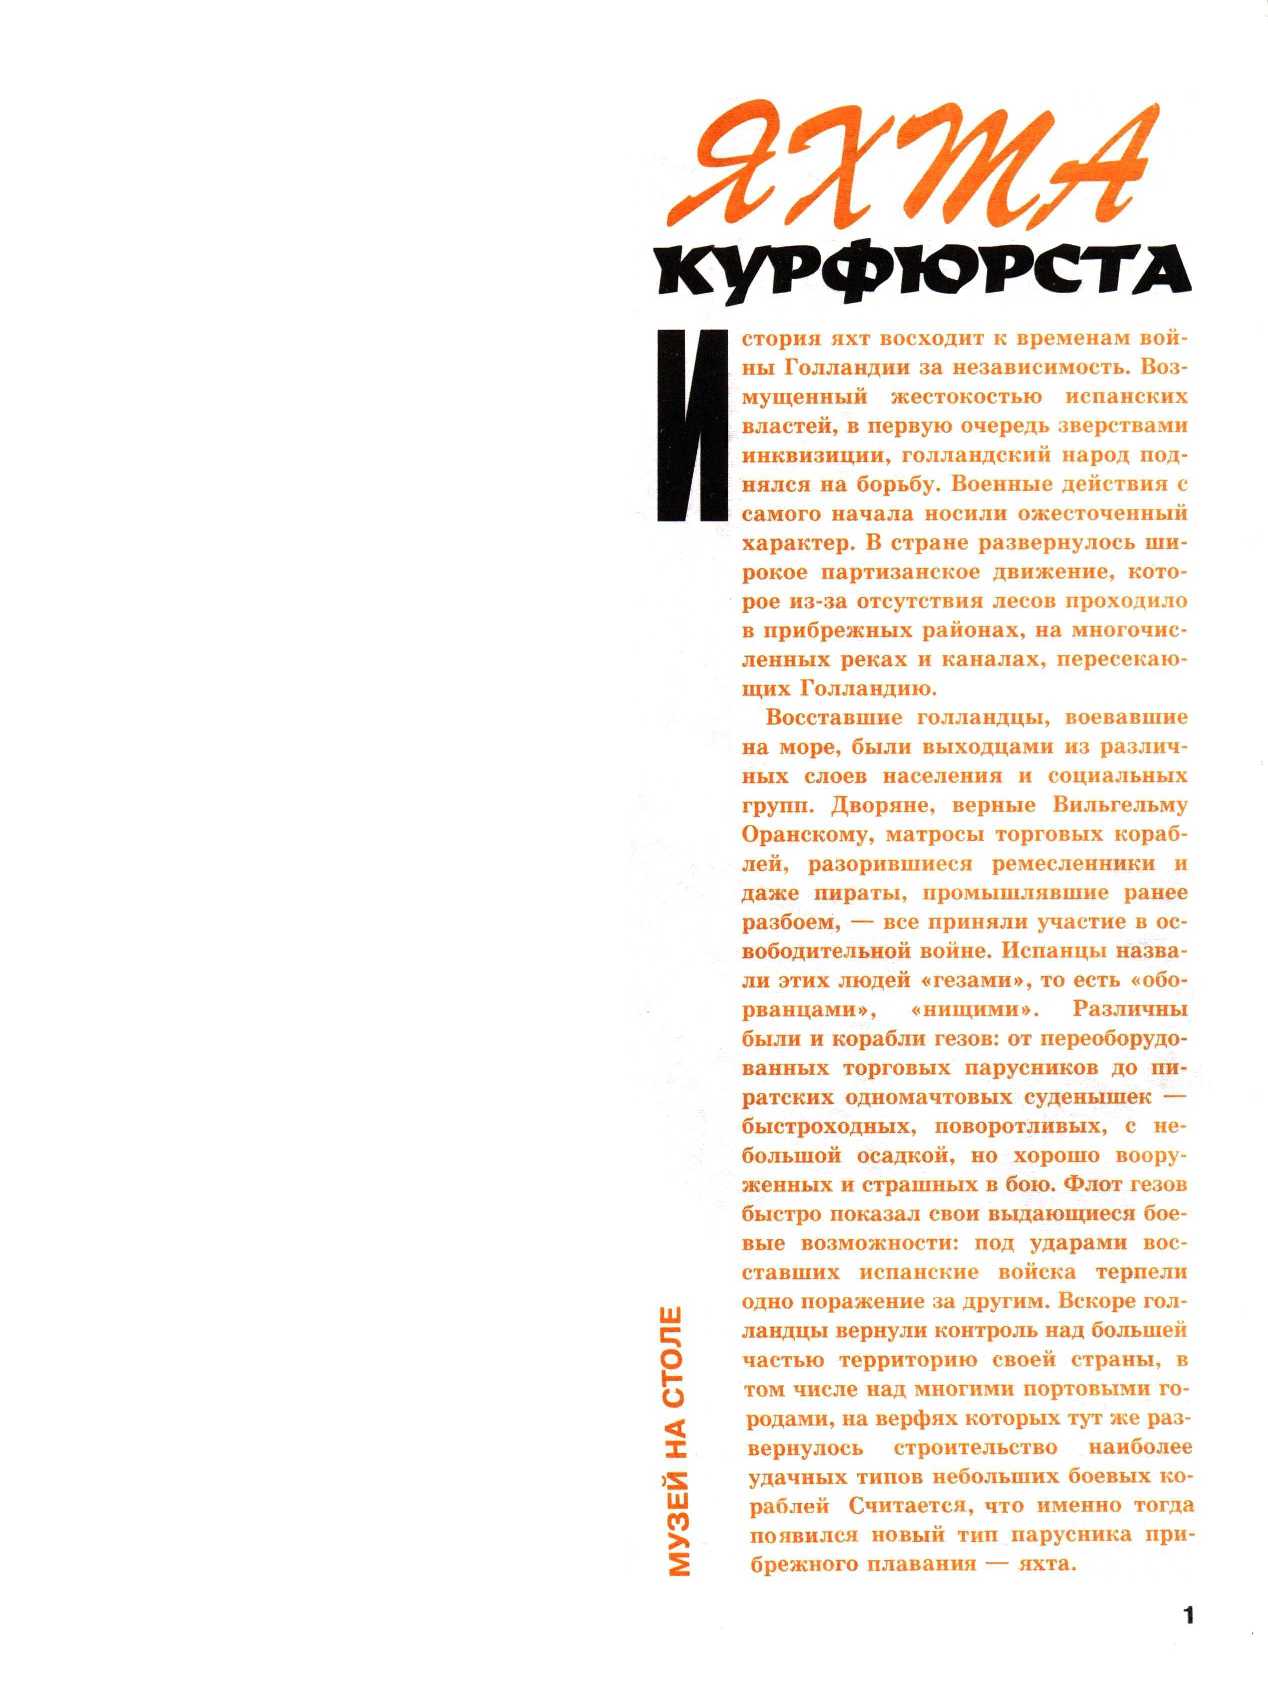 "Левша" 3, 2004, 1 c.